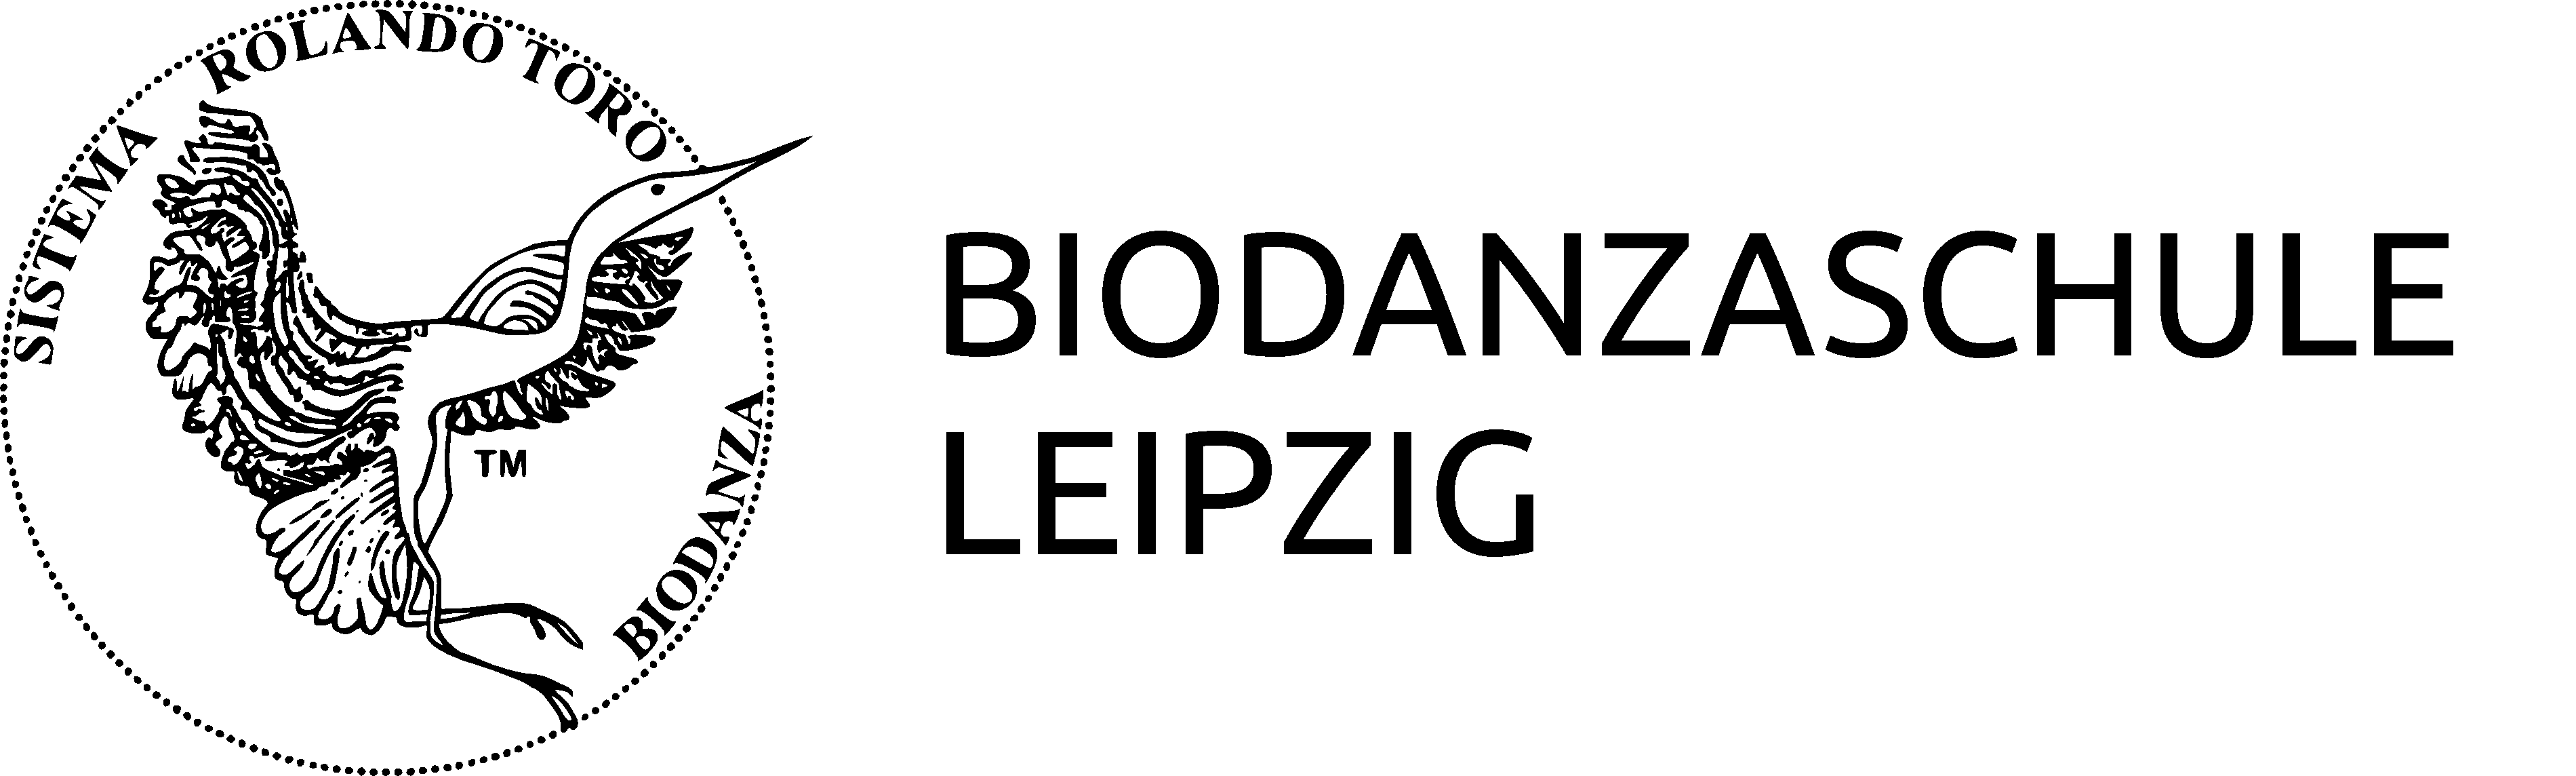 Biodanza-Schule Leipzig